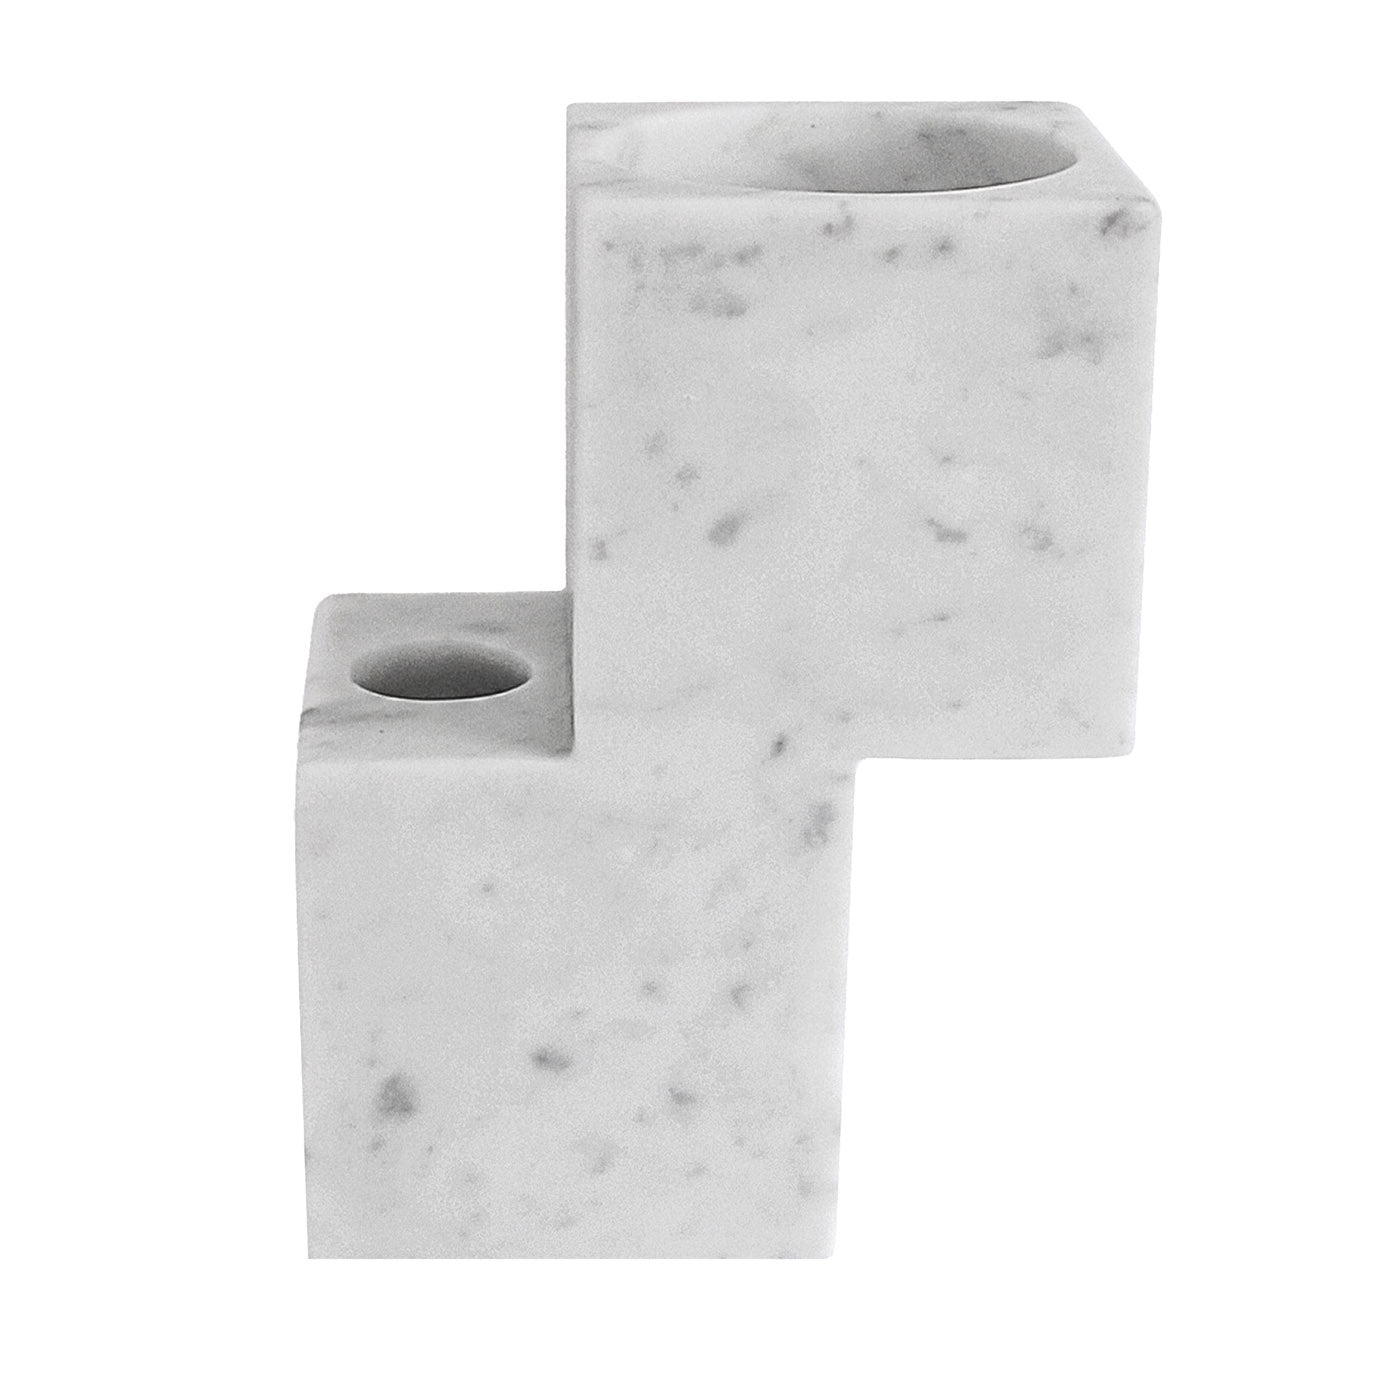 Hybrid-Multifunktionsvase aus weißem Carrara-Marmor - Hauptansicht